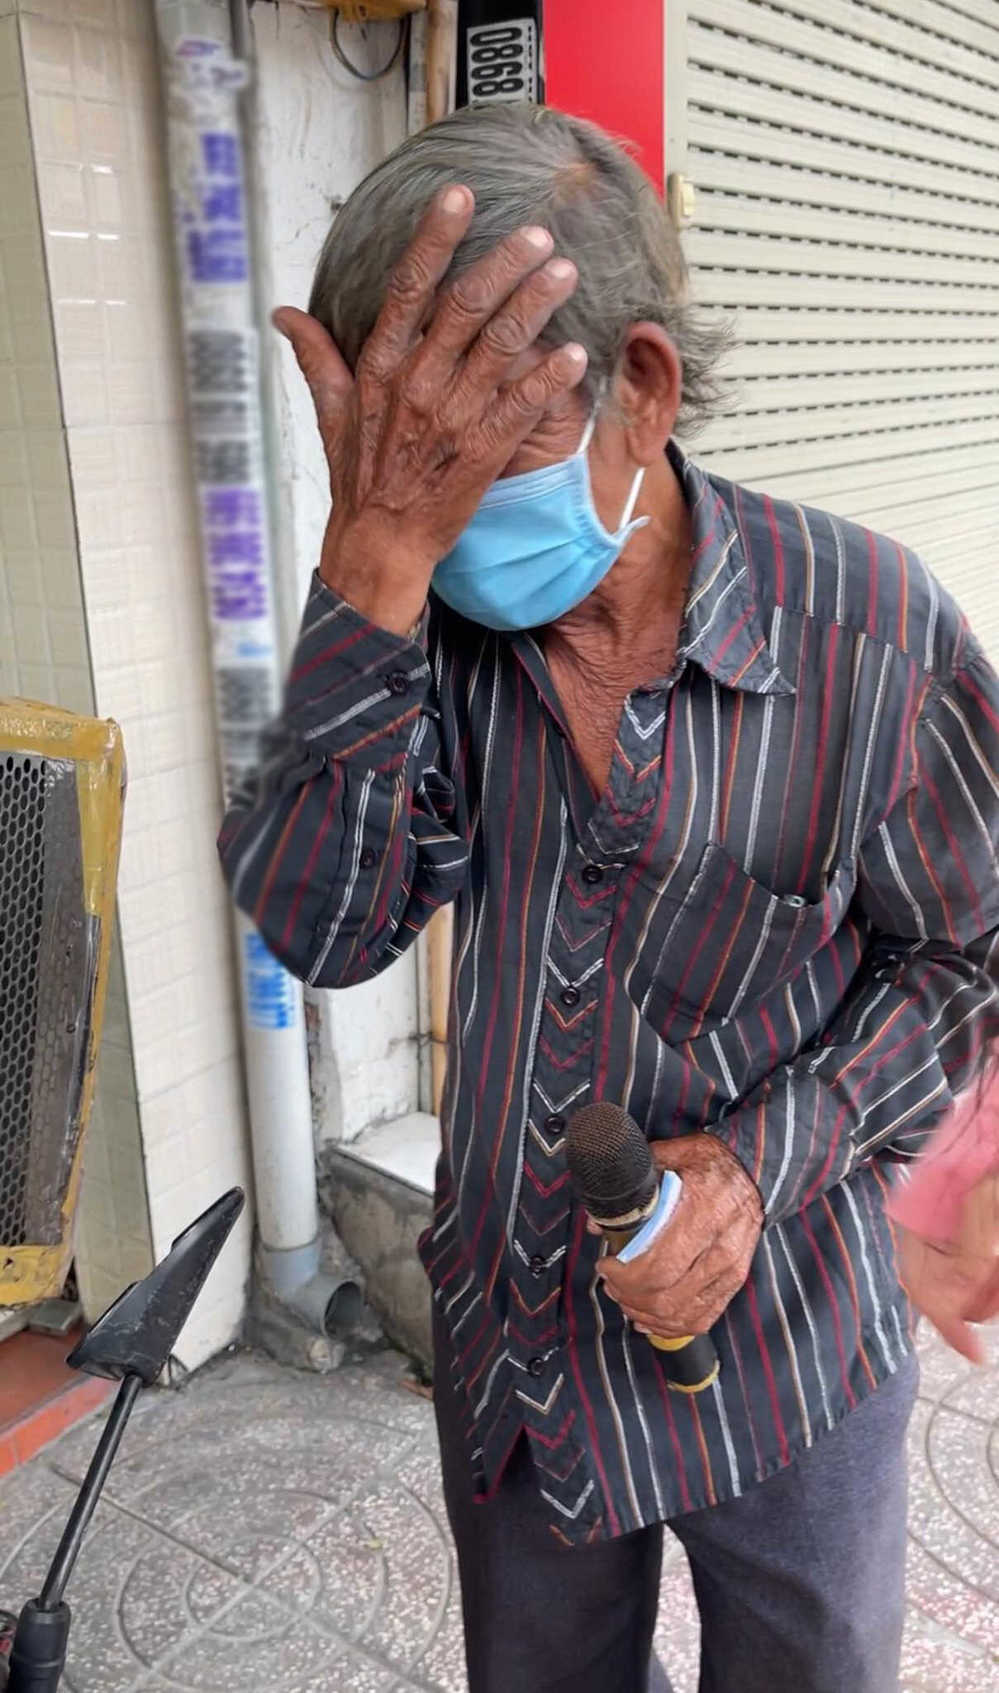 chàng trai khuyết tật tha hương đi xe lăn từ Sài Gòn về quê